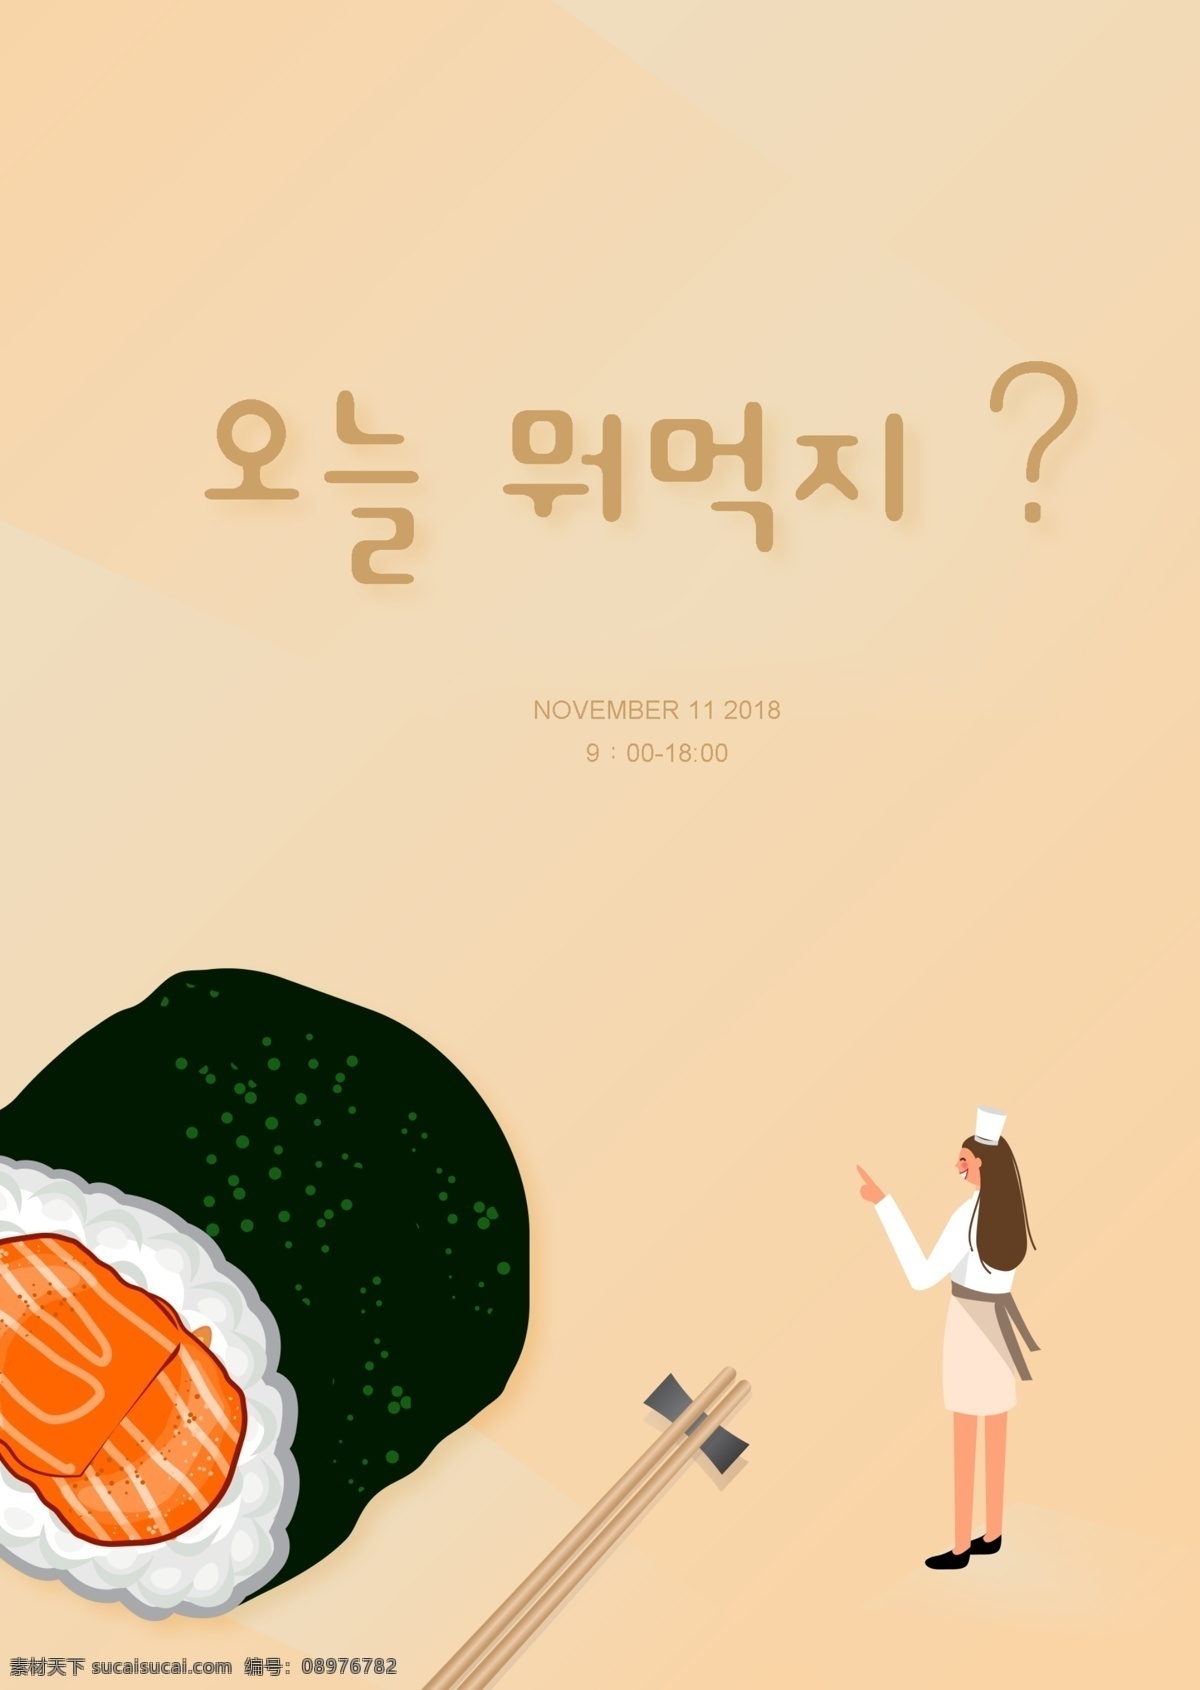 三文鱼 寿司 盘 棕色 简单 插图 广告 领域 韩国 人 紧凑 可爱 橙子 筷子 白色 工作 食物原料 韩国食品广告 主厨 只有一个 韩国广告托盘 韩国风格 海鲜 三文鱼寿司 米色 韩国的艺术 一个 数字 系统